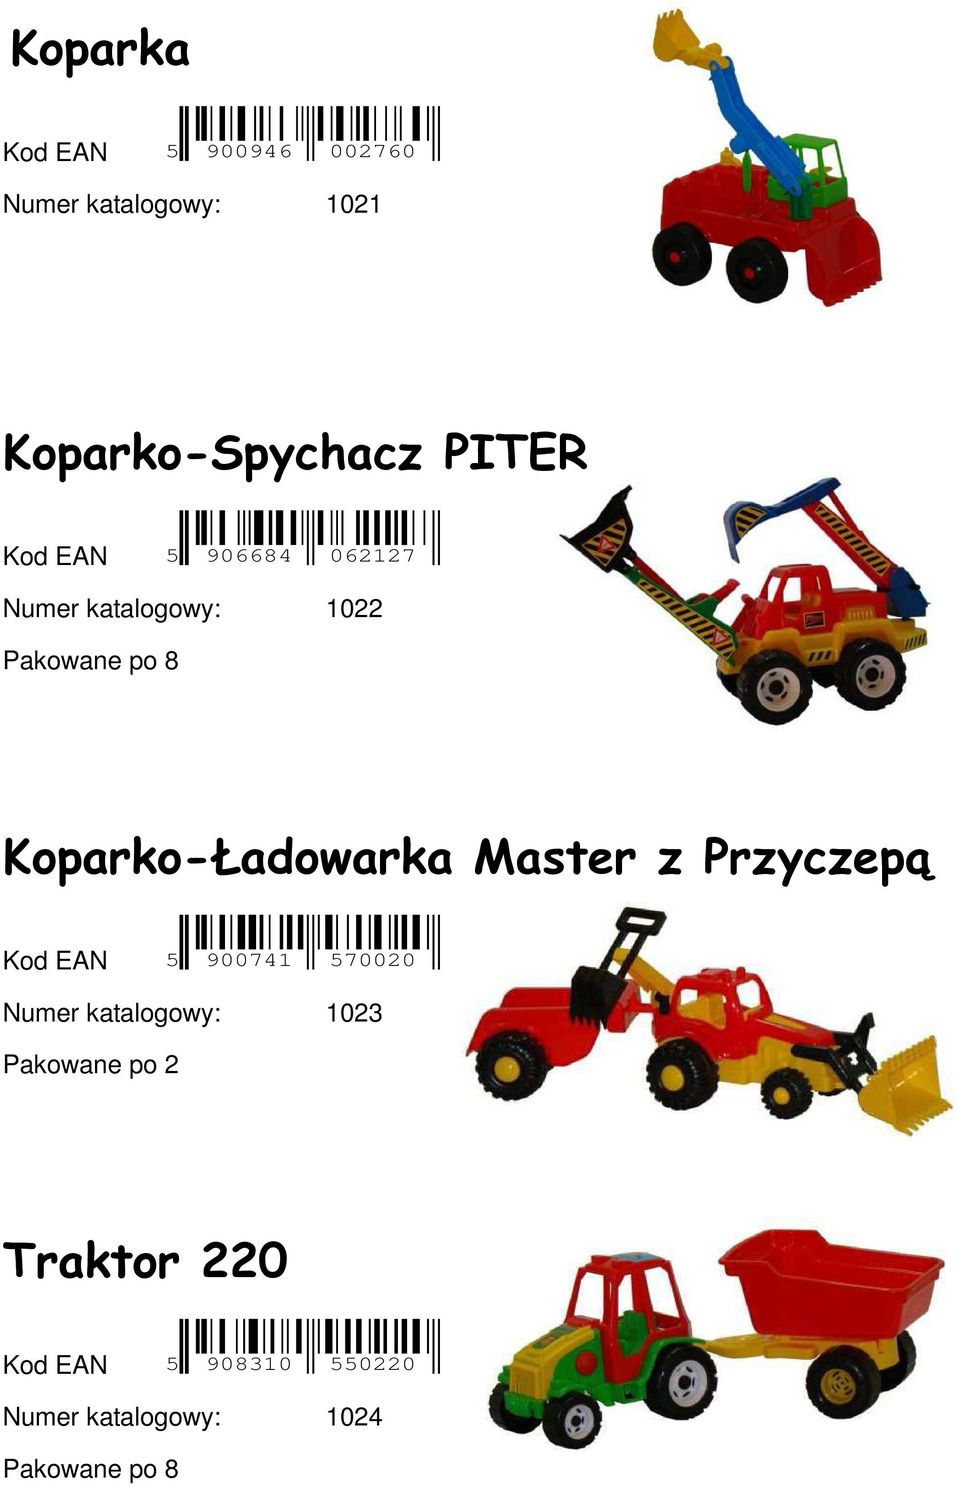 Koparko-Ładowarka Master z Przyczepą Kod EAN 5 900741 570020 Numer